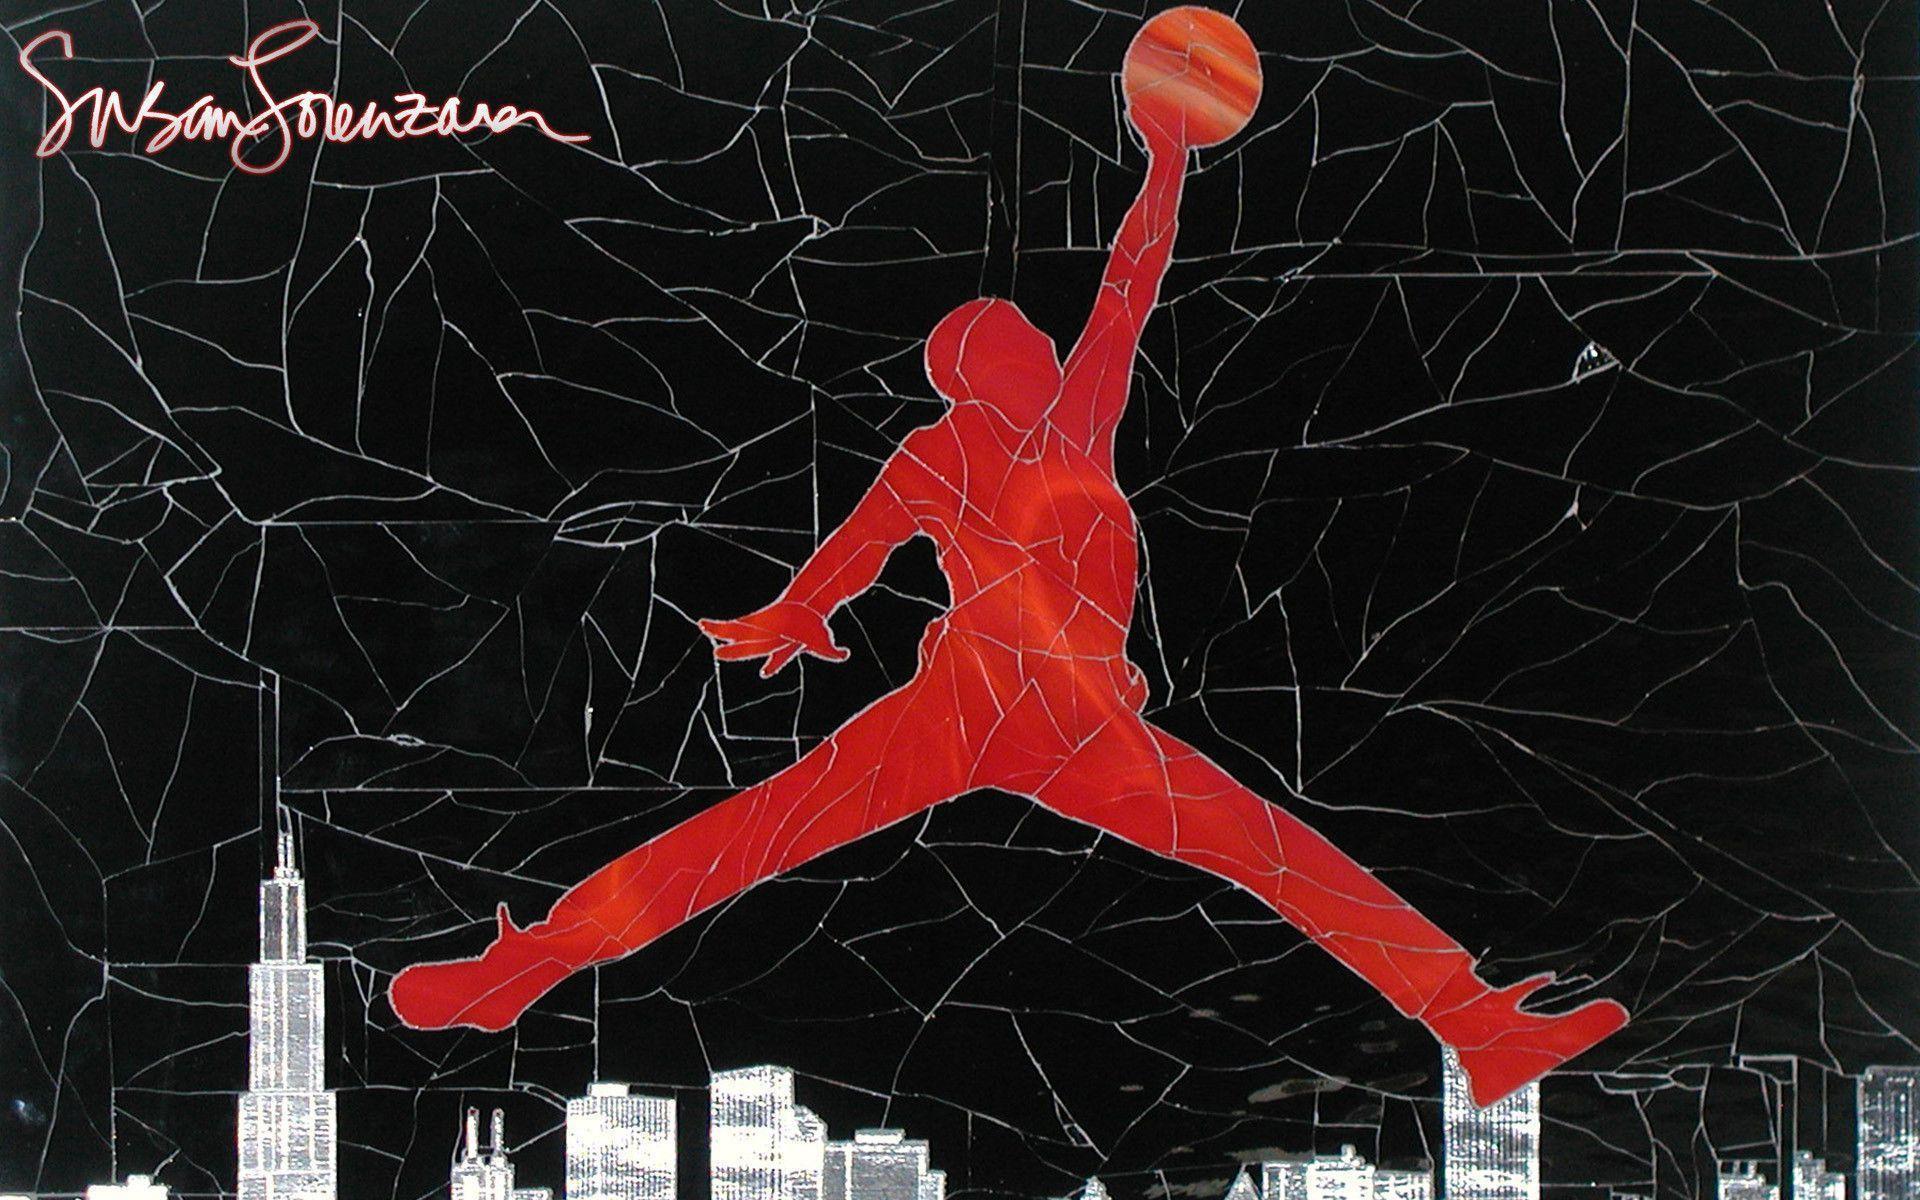 Air Jordan Logo Wallpaper